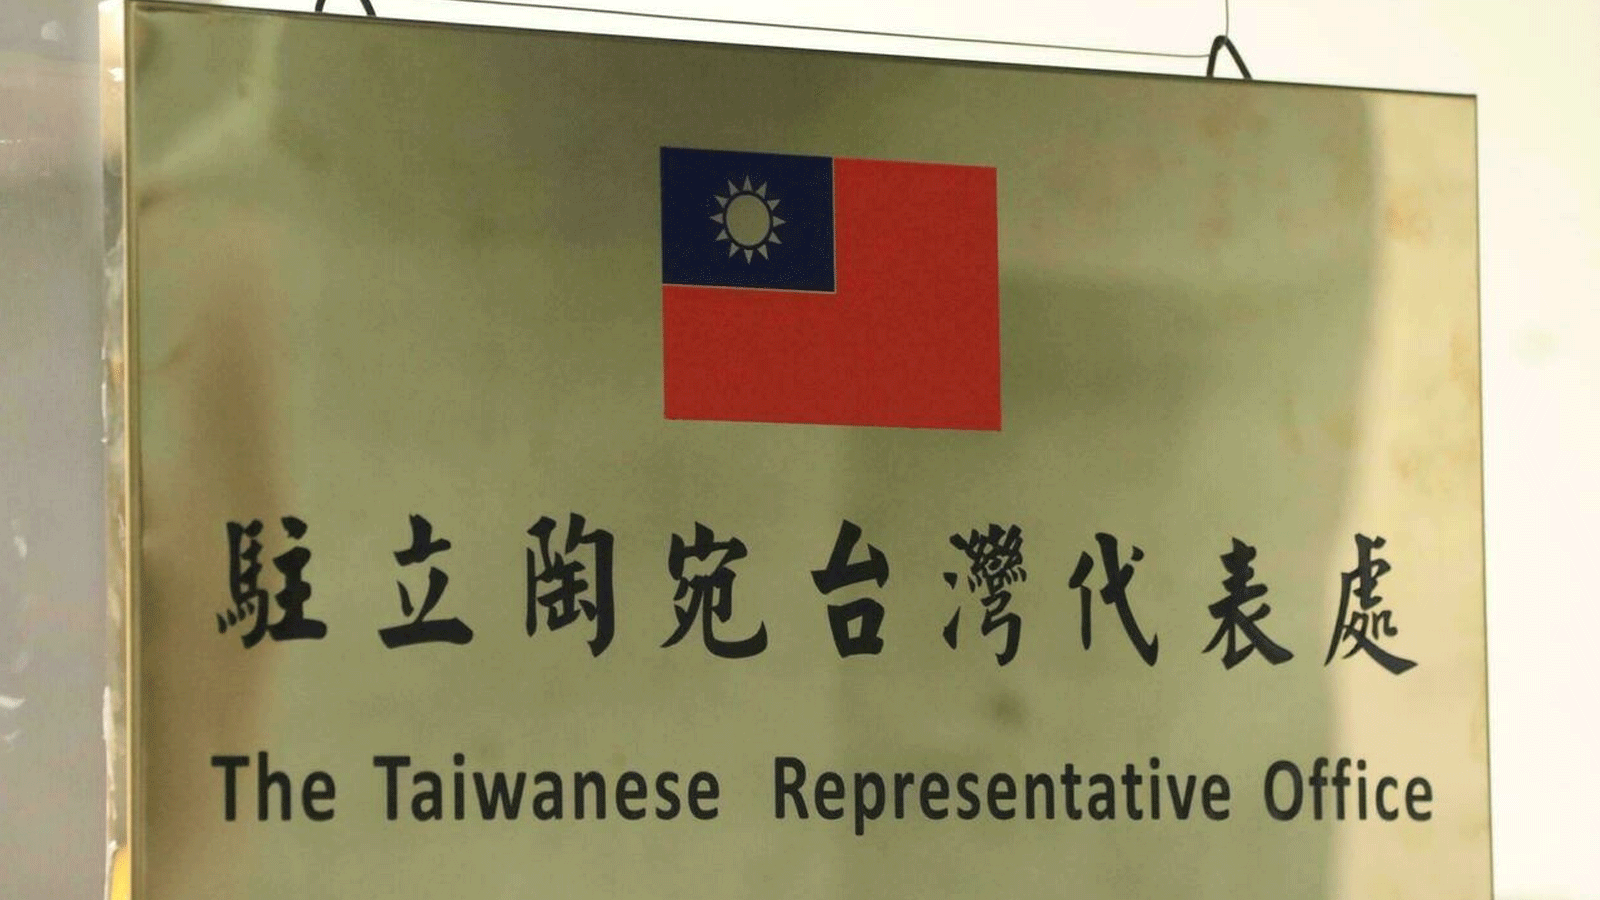 لافتة التعريف بمكتب التمثيل الرسمي الخاص بتايوان في ليتوانيا